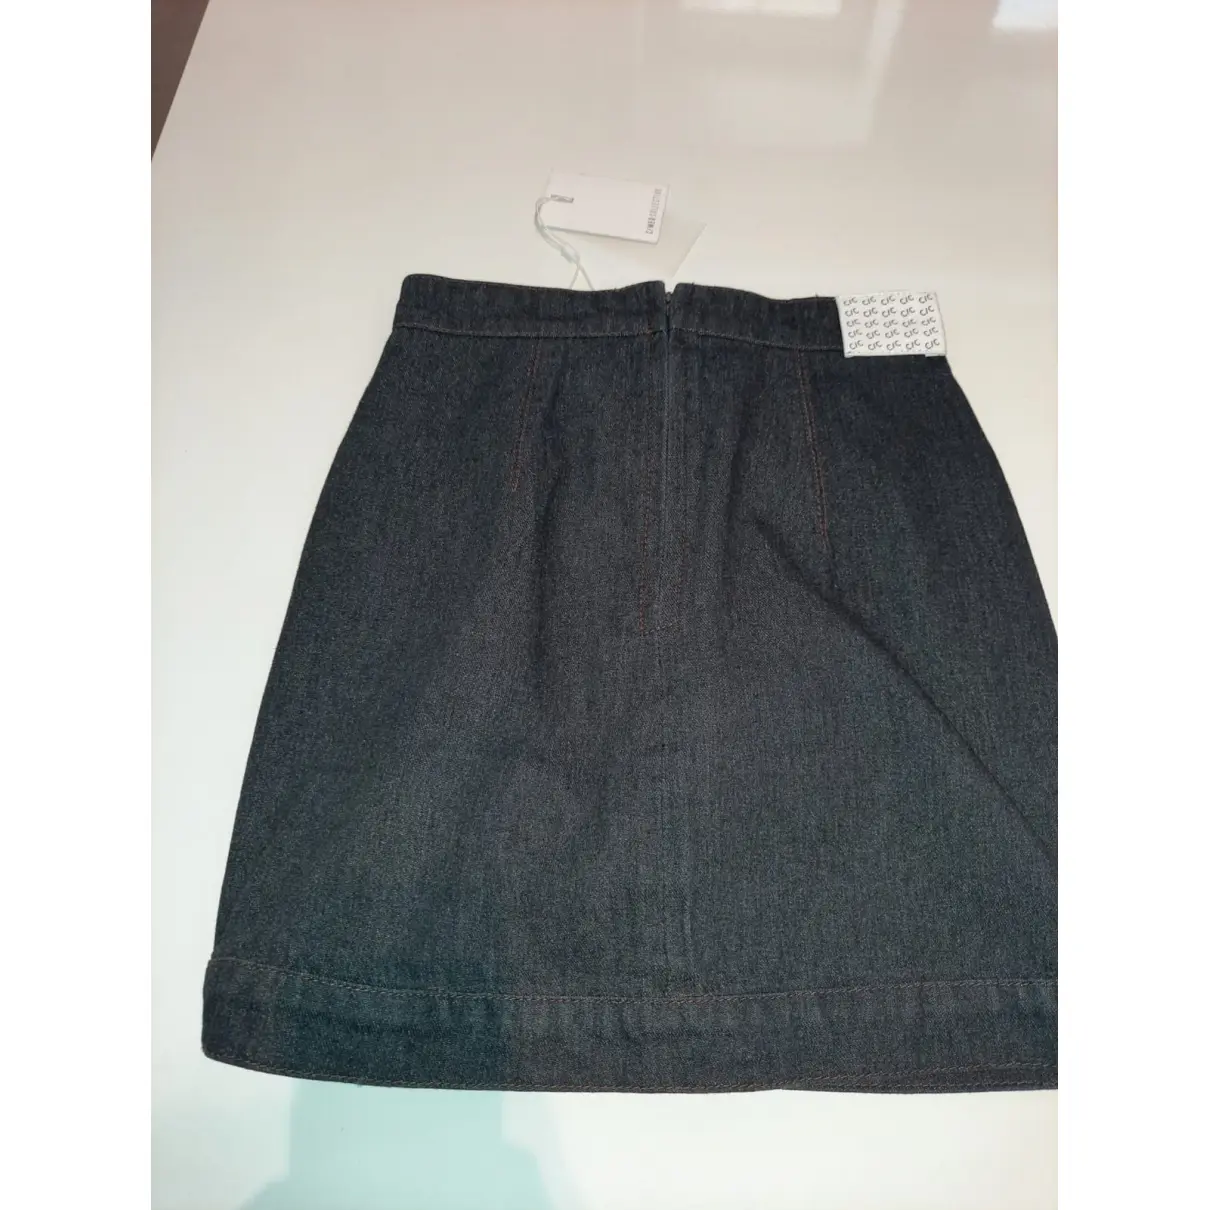 Buy C/MEO Mini skirt online